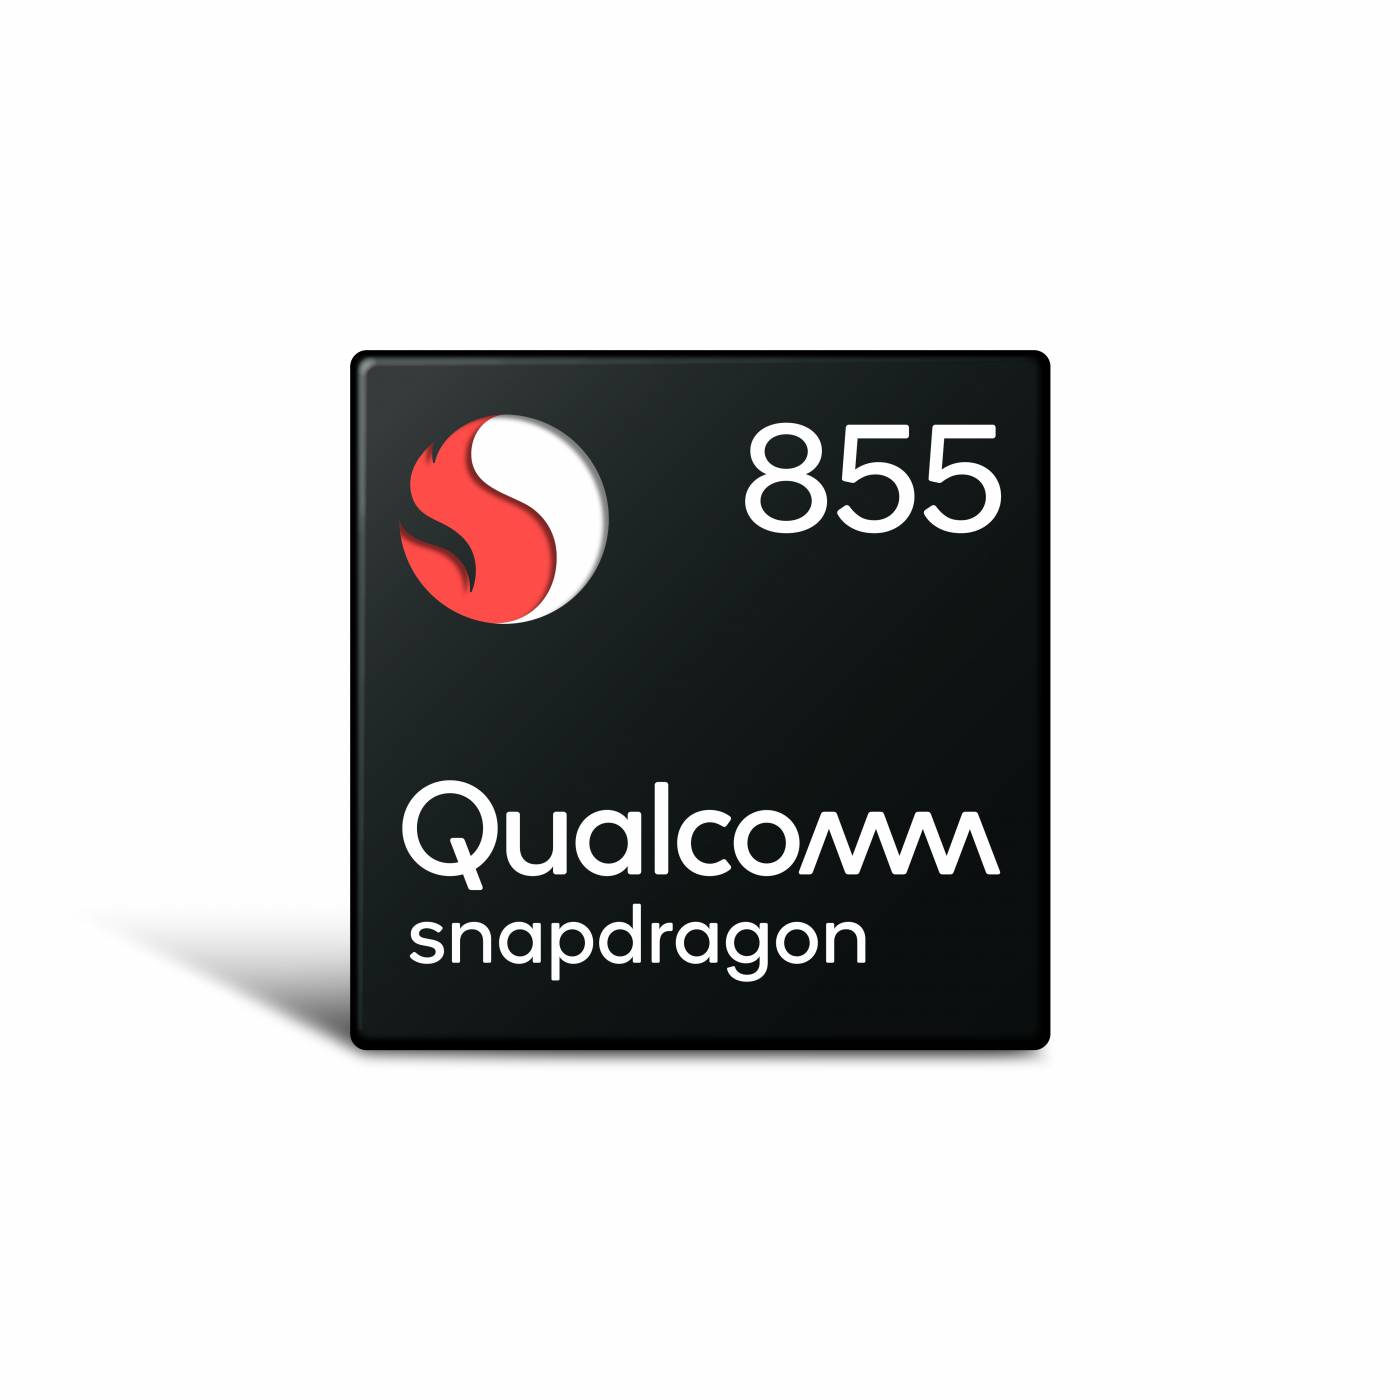 Със Snapdragon 855 Qualcomm предявява претенциите си за 5G и AI господство